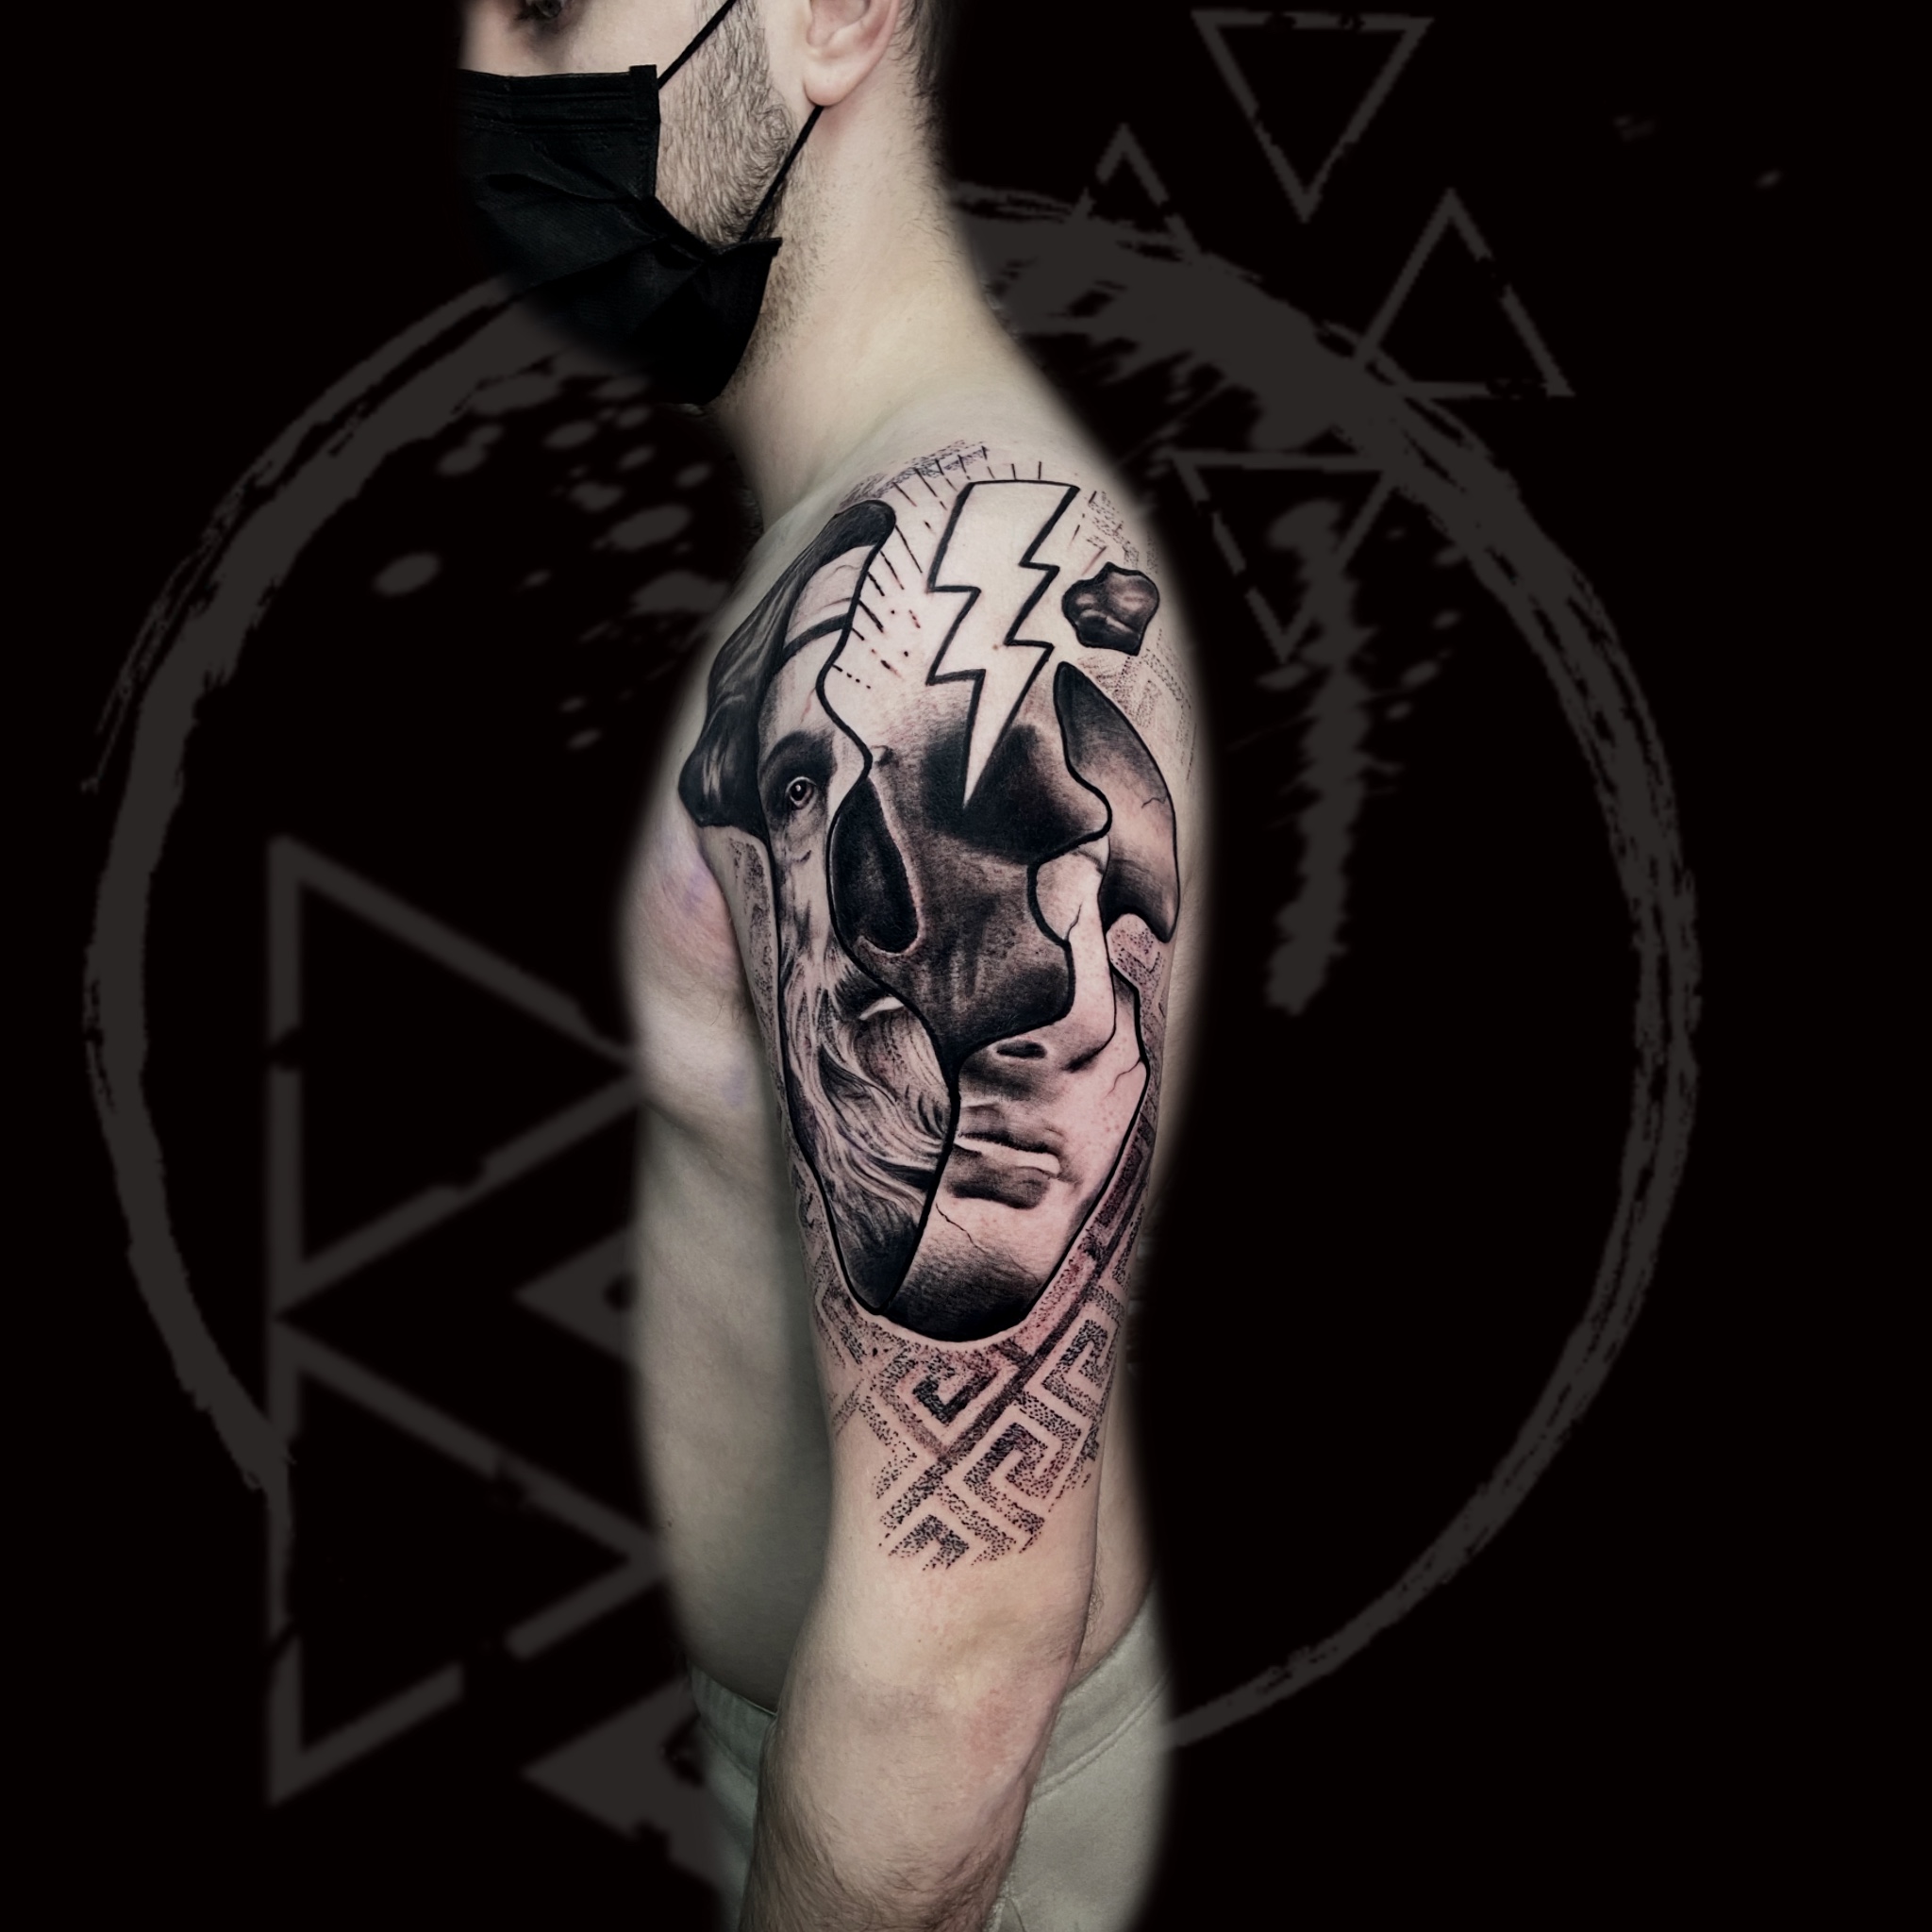 Modern Realism Tattoo, Black And Grey Tattoo, Contemporary Tattoo, Amsterdam Tattoo, Romain Blackspirit